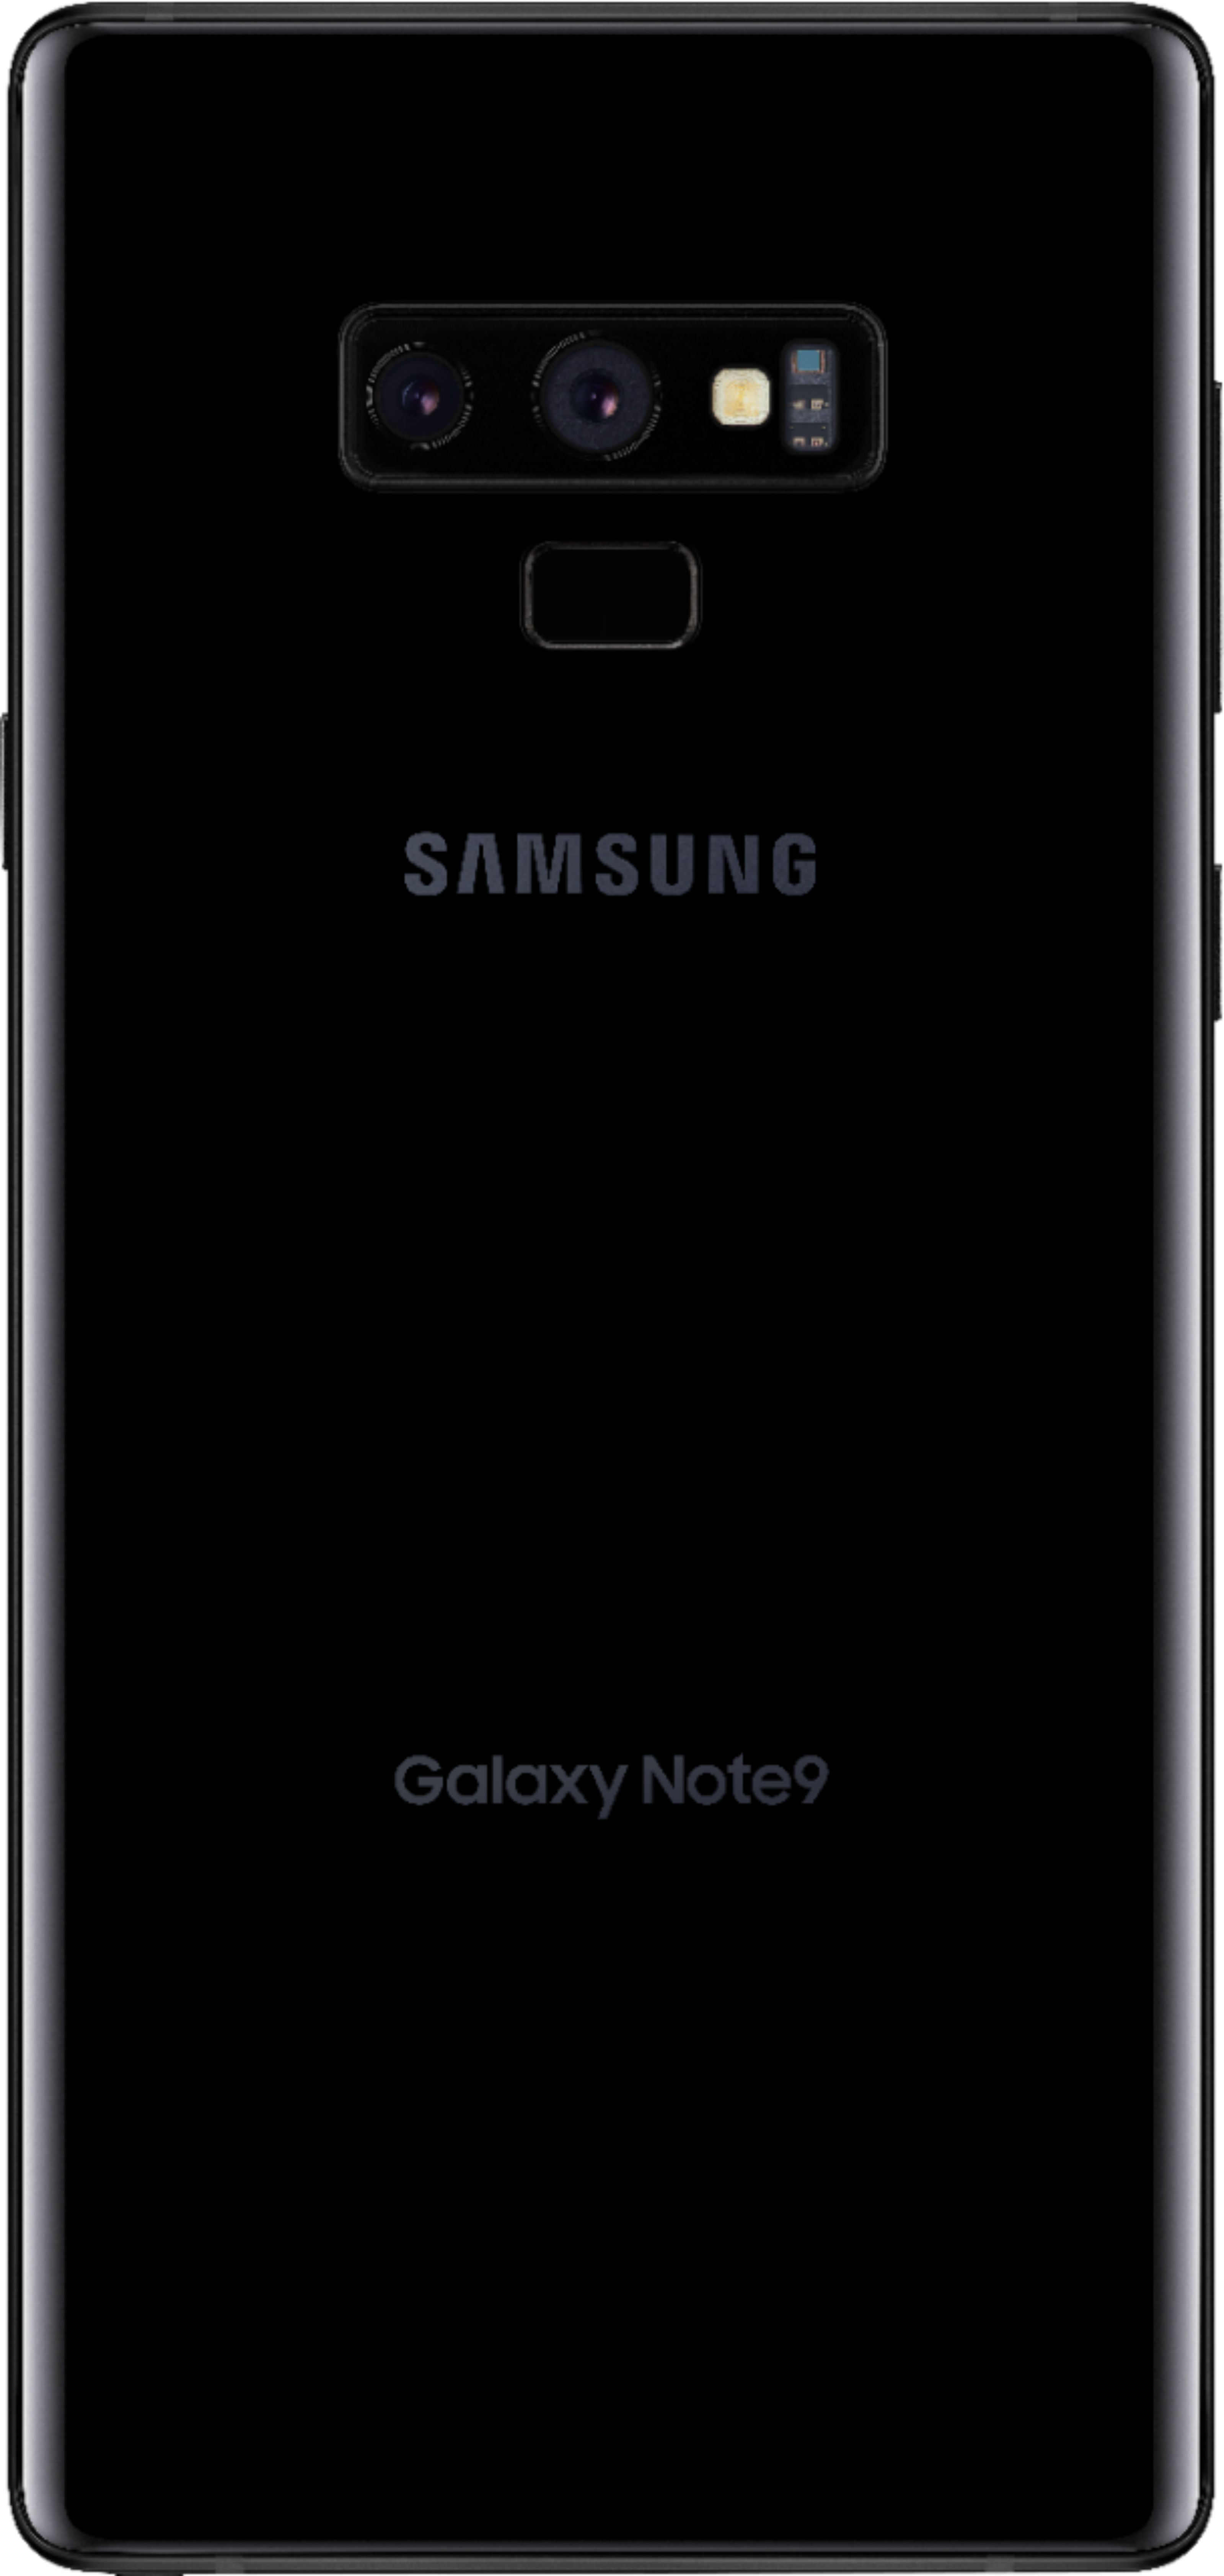 スマートフォン/携帯電話 スマートフォン本体 Best Buy: Samsung Galaxy Note9 128GB Midnight Black (Verizon 